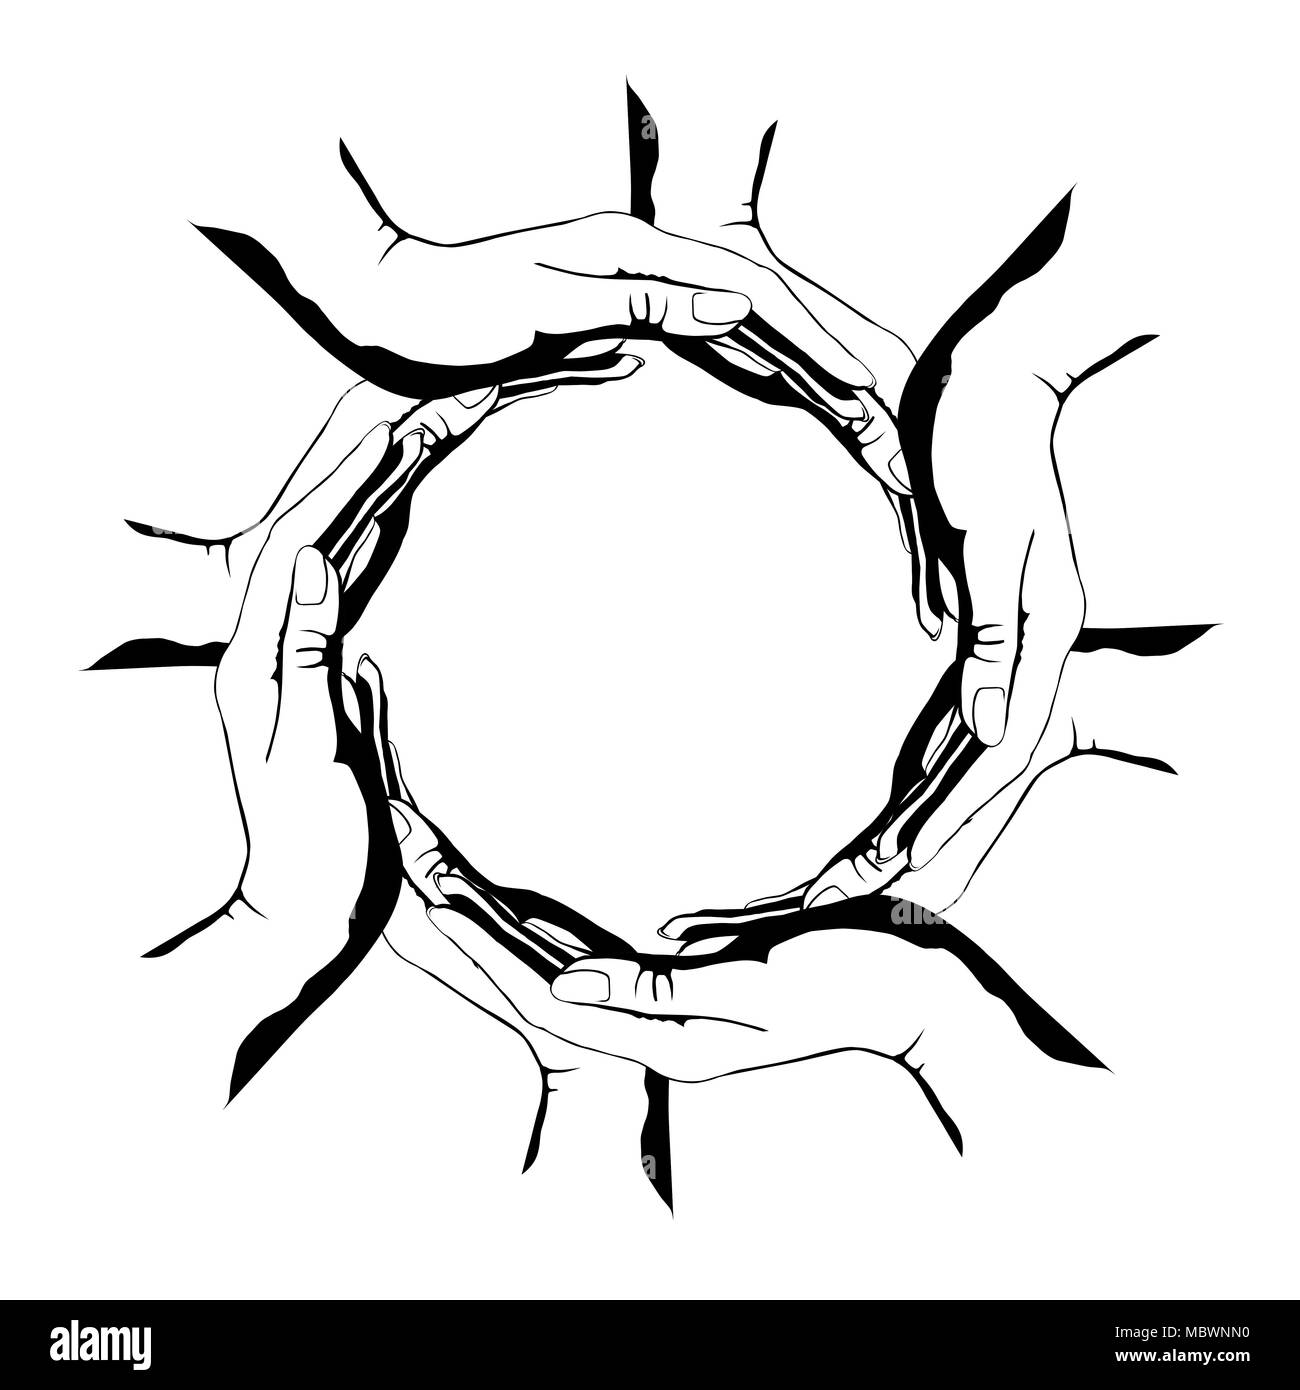 Un groupe de personnes faisant un cercle avec leurs mains. Le symbole rond conceptuelle illustration isolé sur fond blanc Banque D'Images